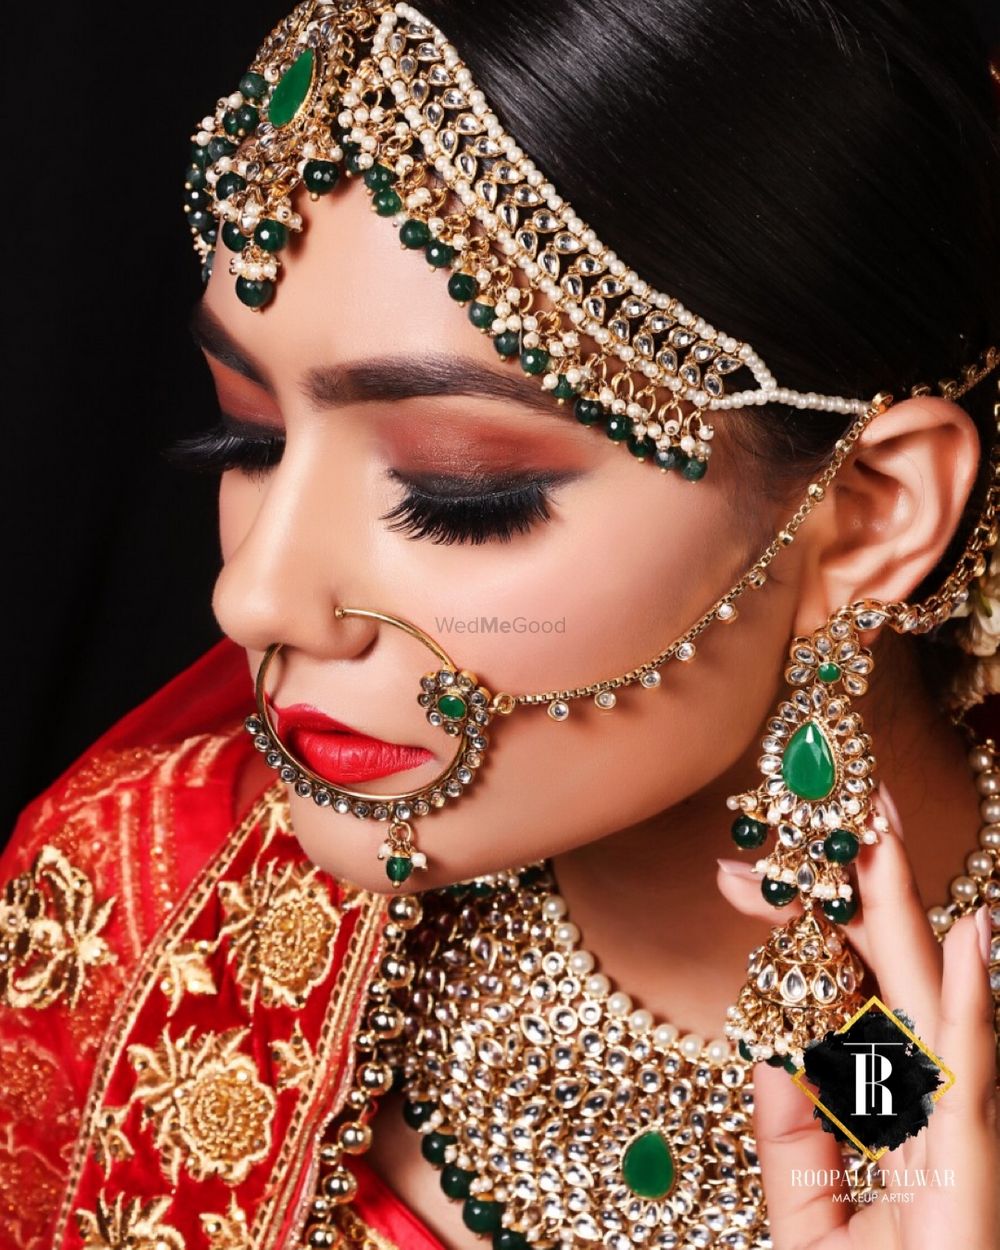 Photo By Roopali Talwar Makeup Artist - Bridal Makeup